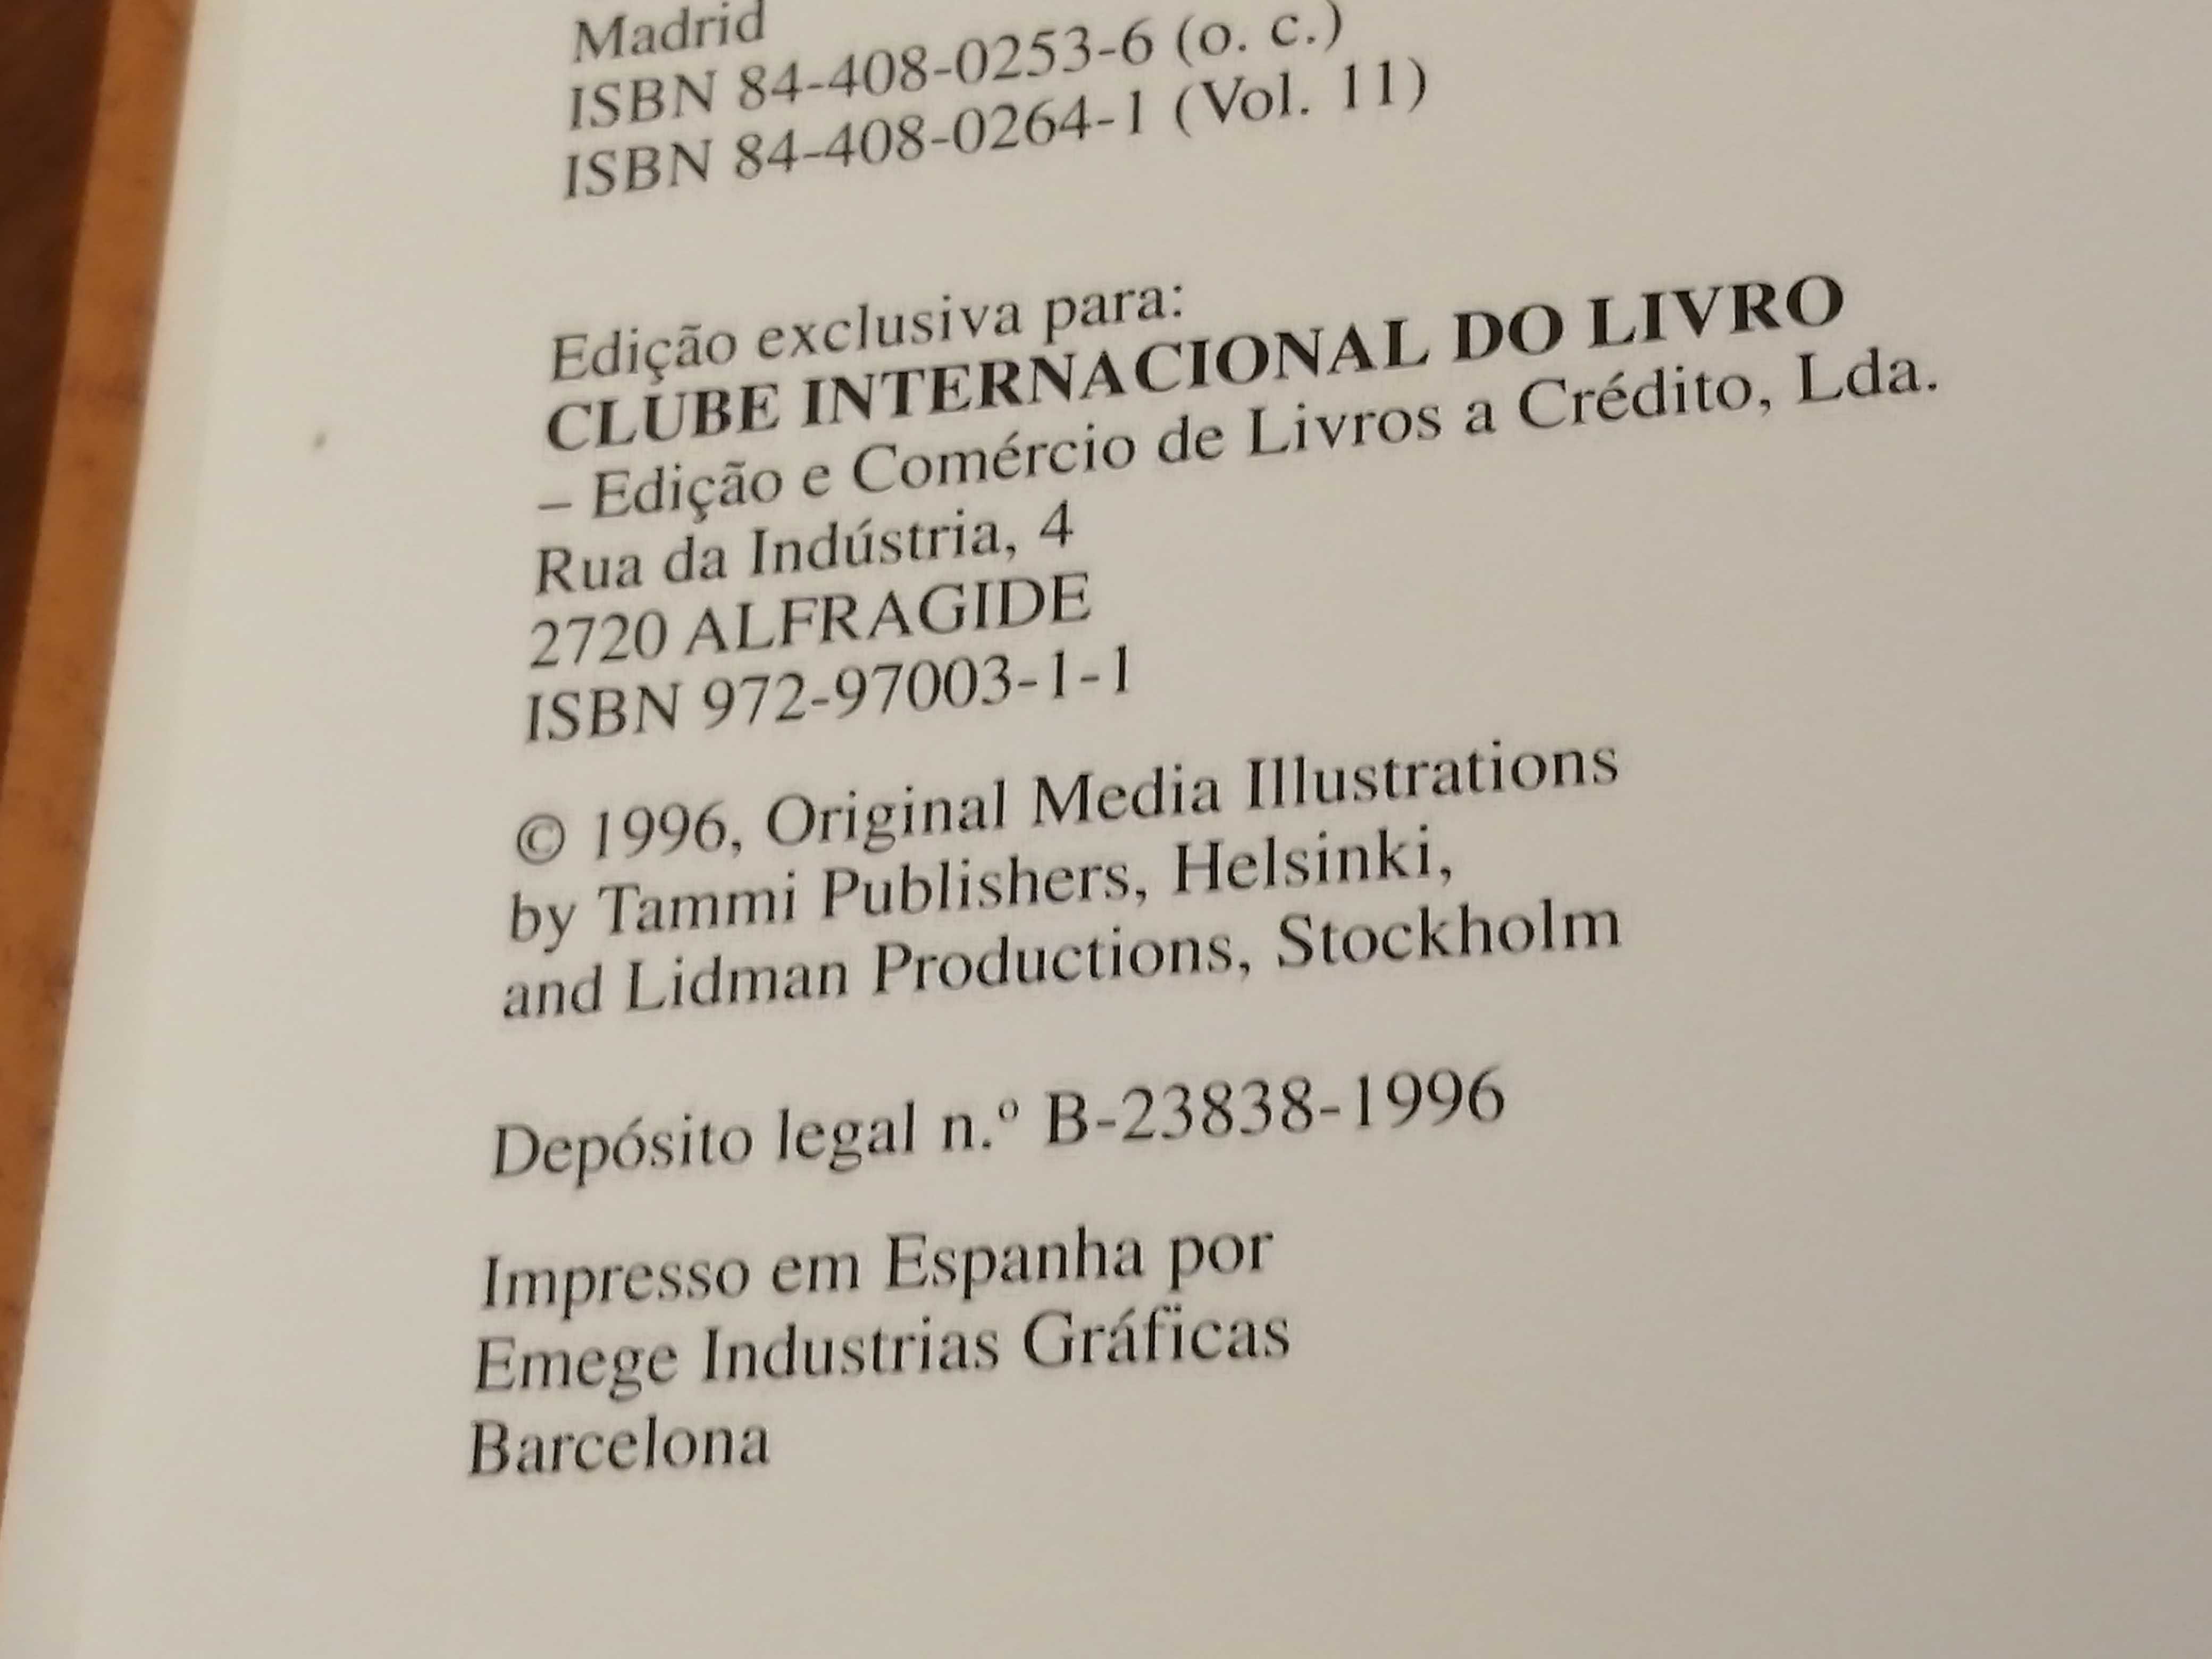 Nova Enciclopédia Portuguesa-Clube Internacional do livro-1996